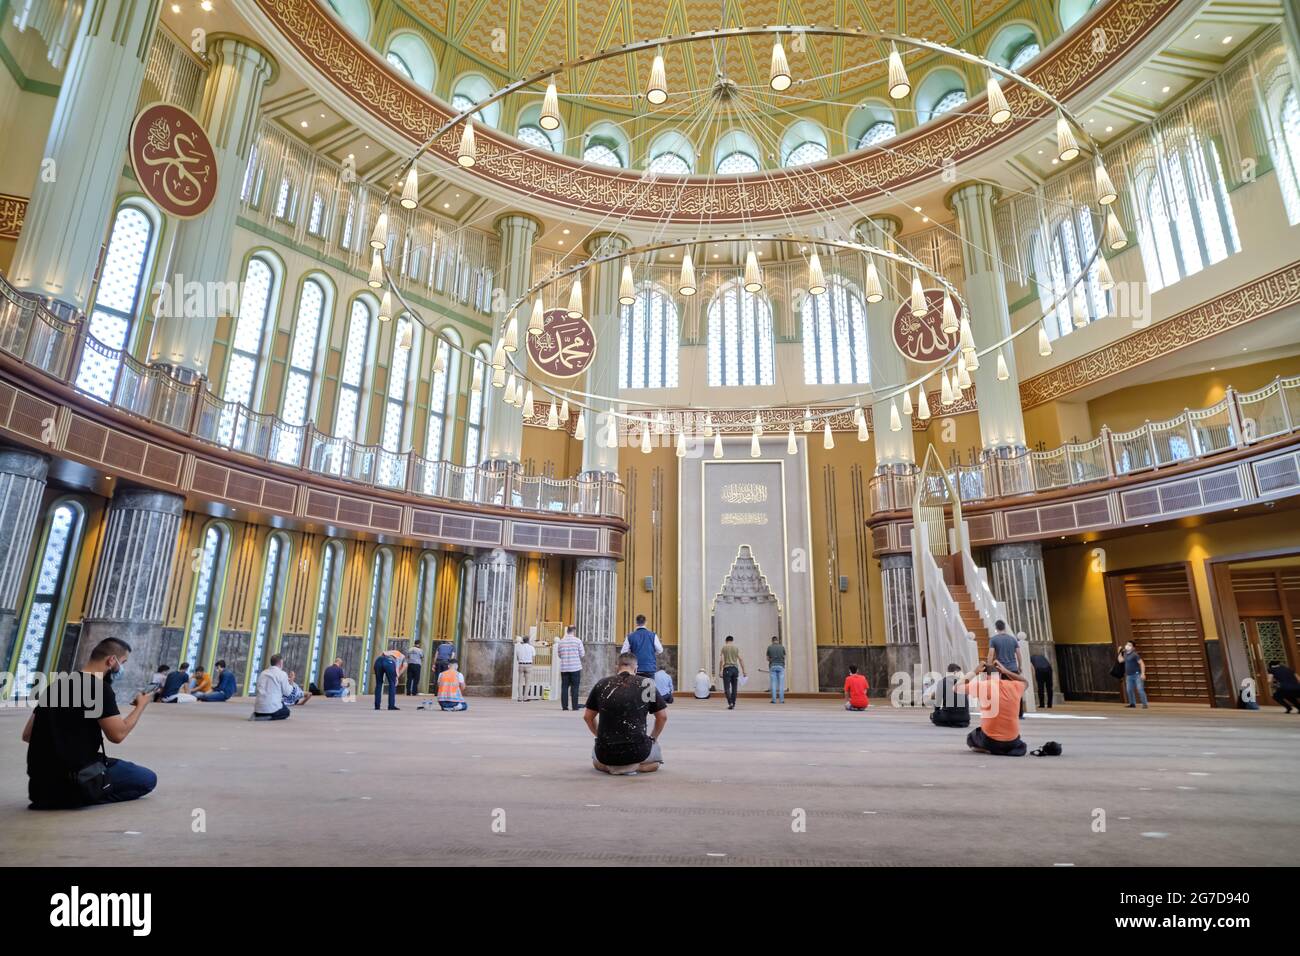 Dettagli interni dalla Moschea di Taksim, un complesso di moschea in Piazza Taksim, Istanbul, Turchia Foto Stock